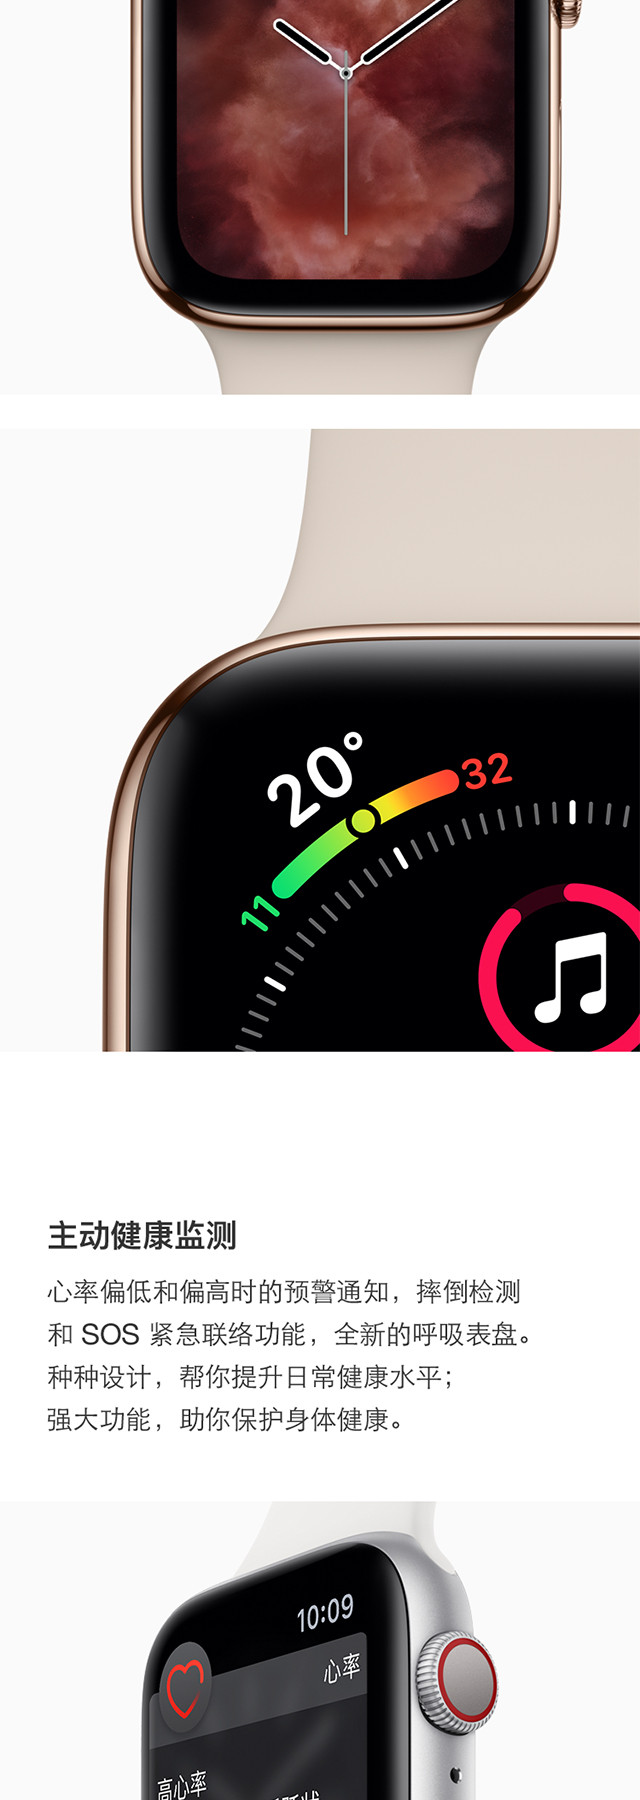 Apple Watch S4苹果智能手表 44毫米 蜂窝网络版+GPS 铝金属表壳